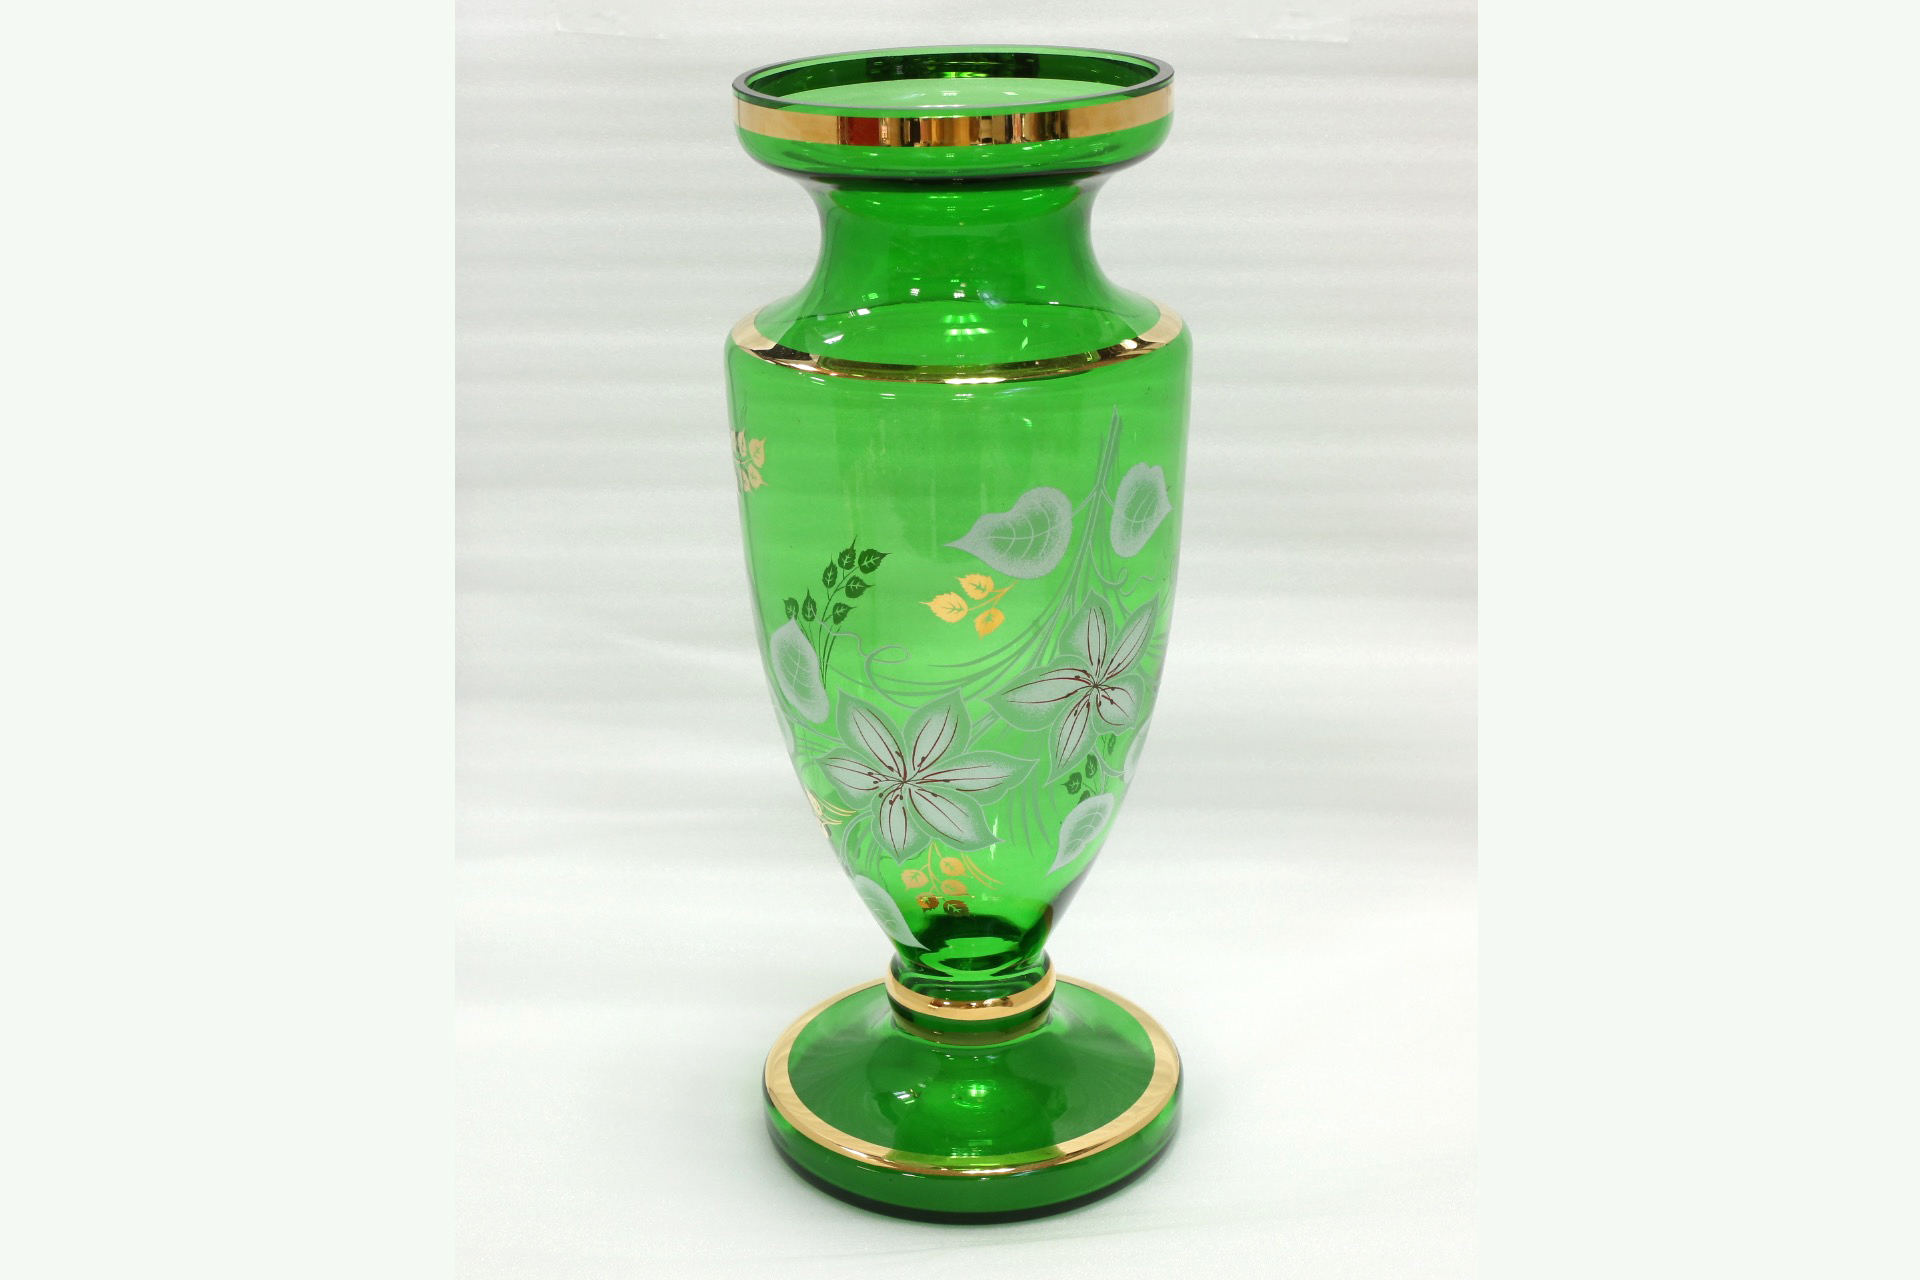 ボヘミアグラス 花瓶 | サークルワン商品情報